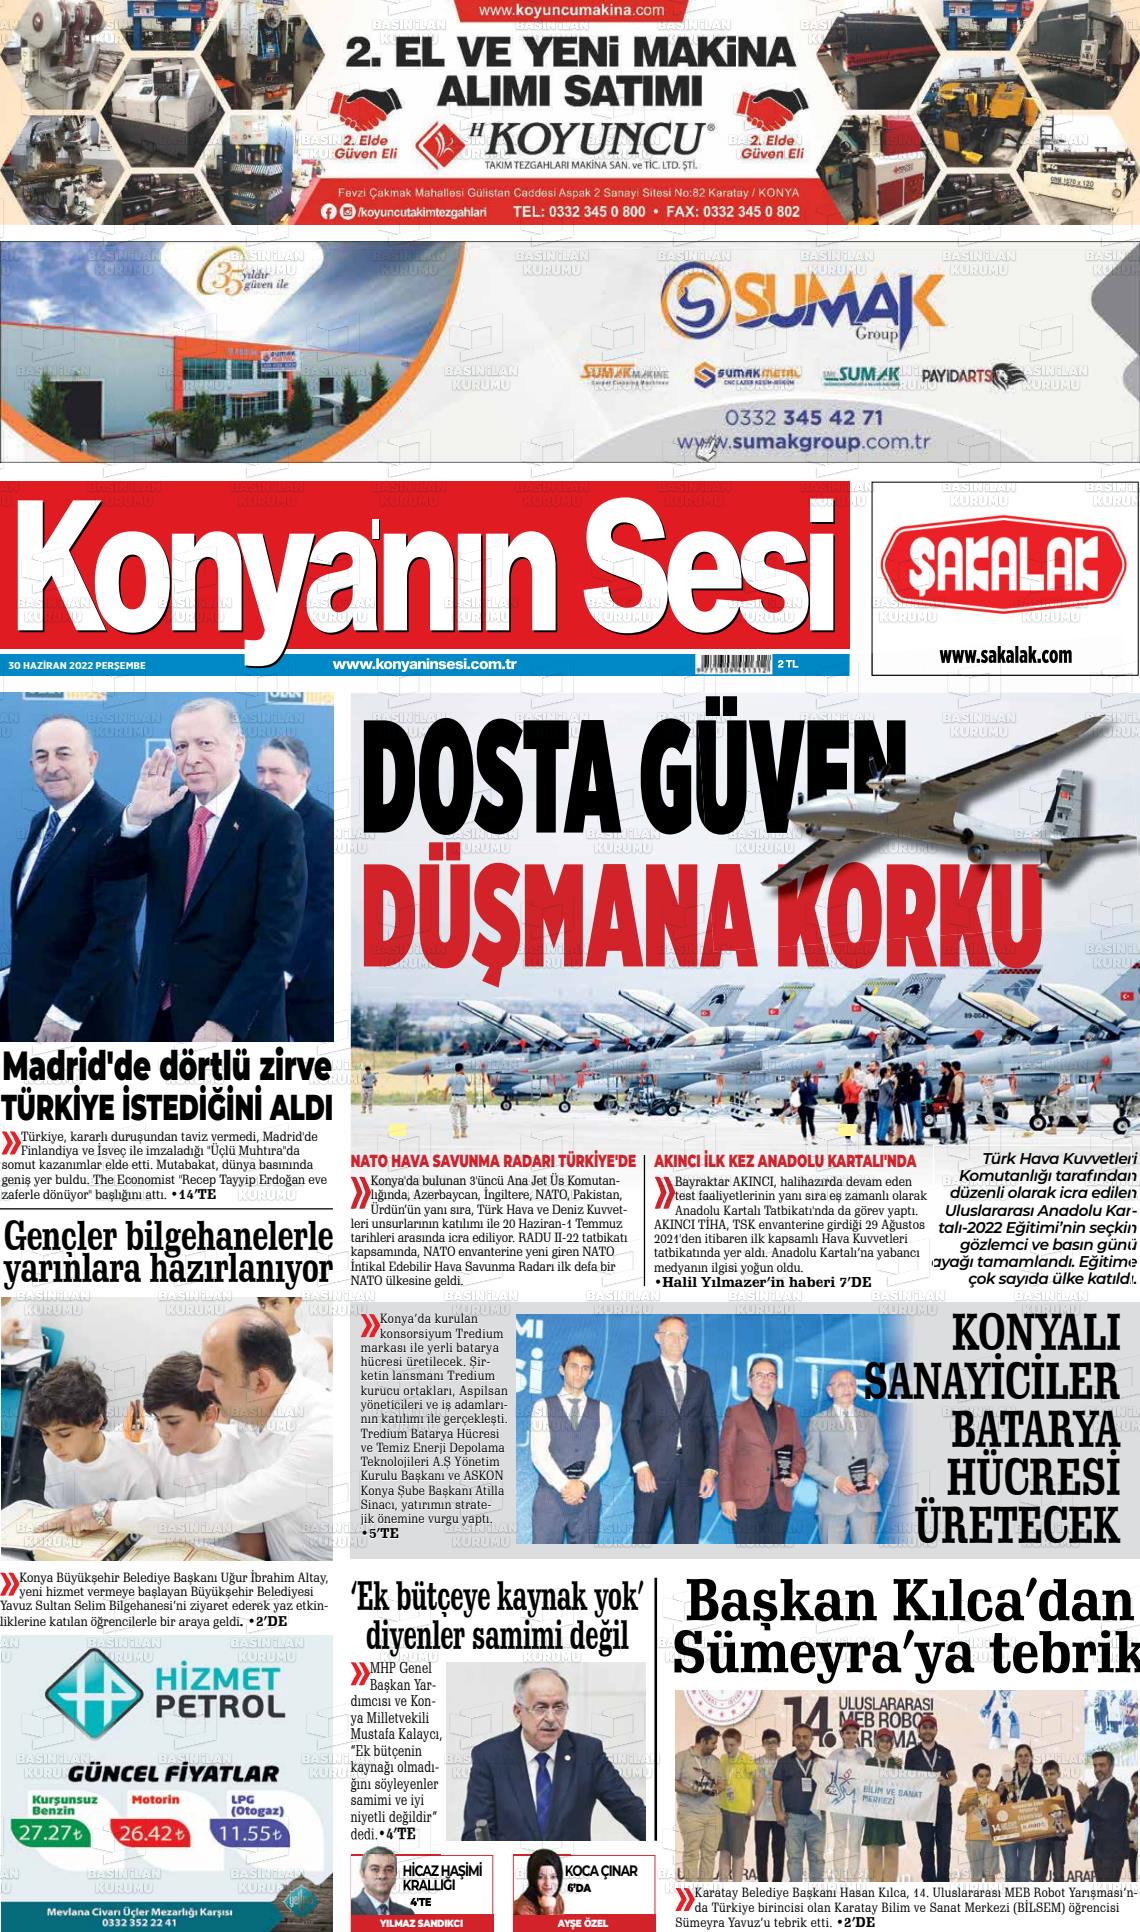 01 Temmuz 2022 Konyanin Sesi Gazete Manşeti